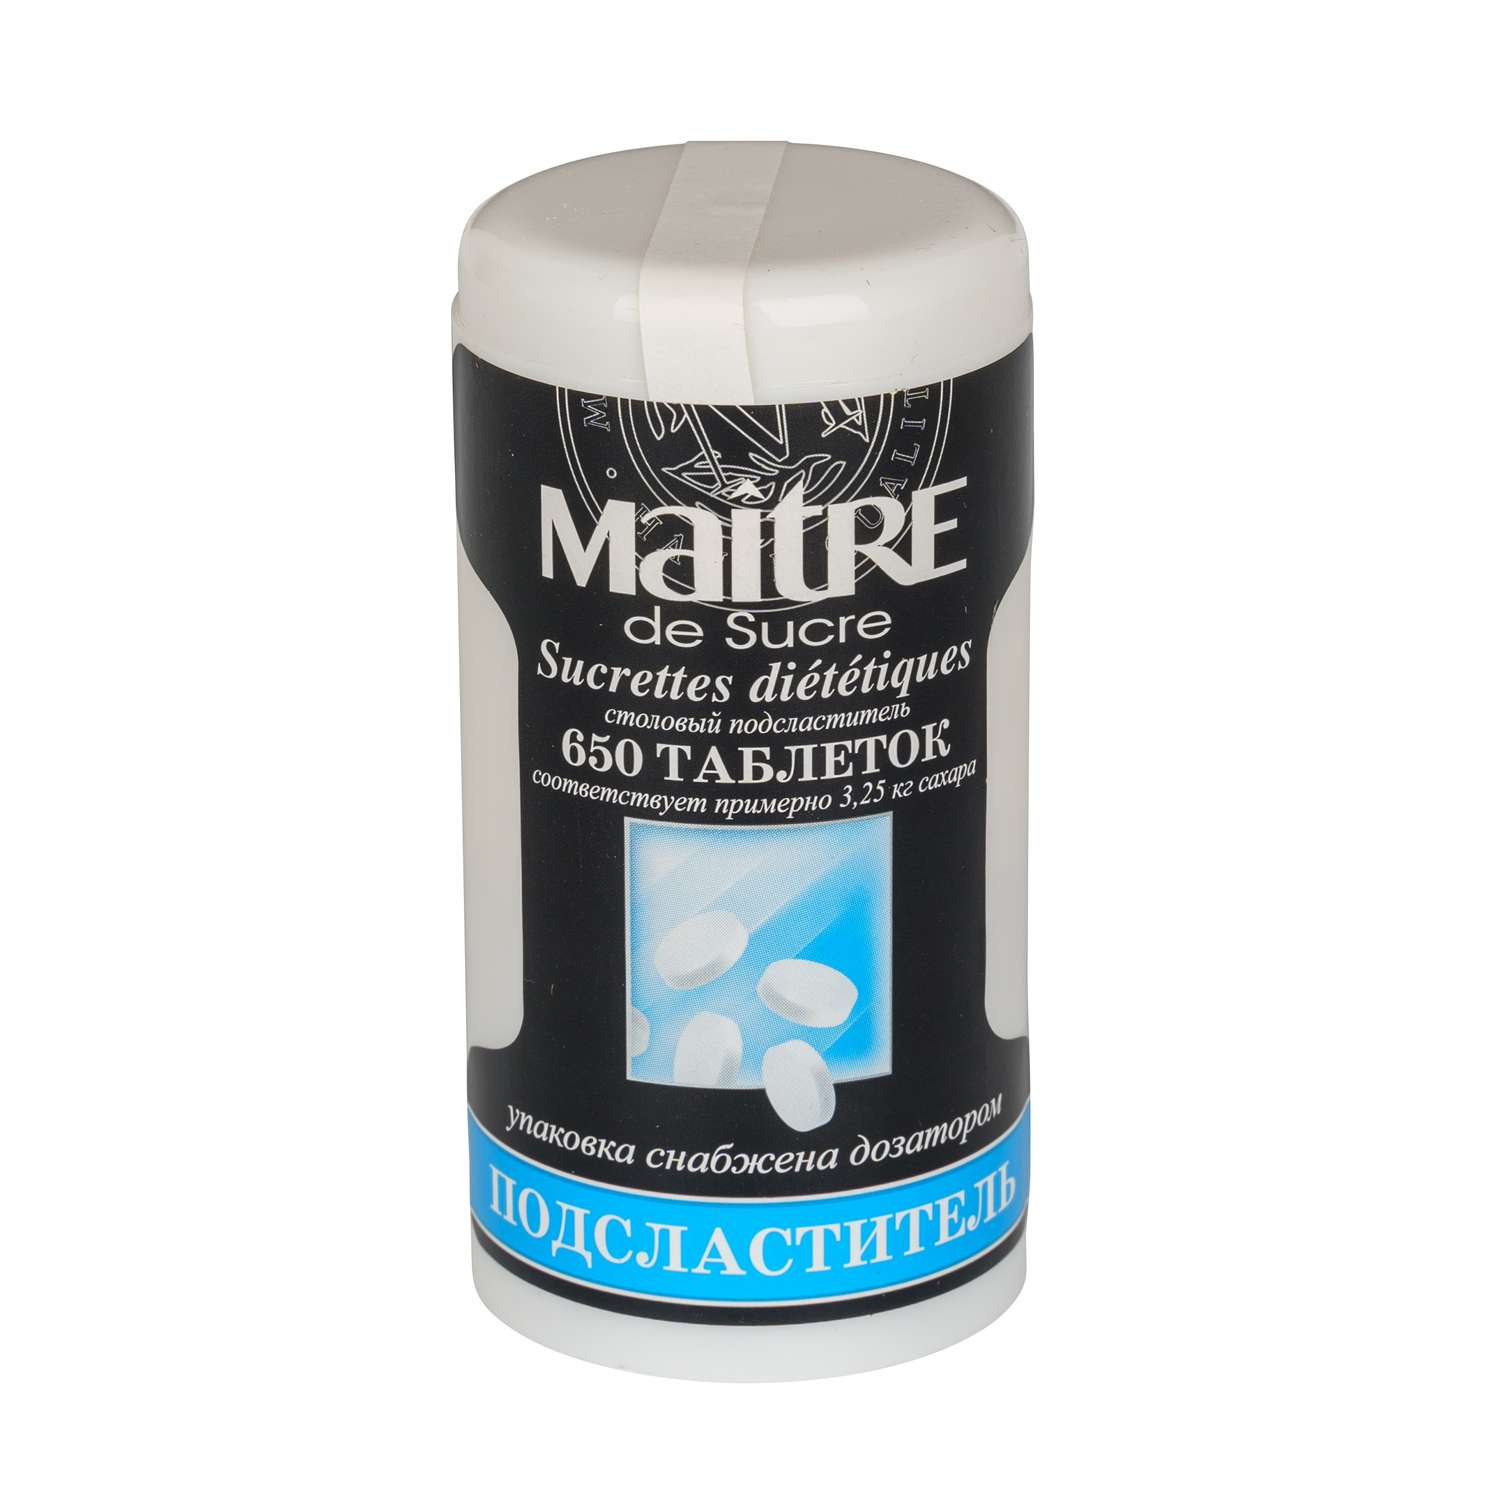 Подсластитель Maitre de Sucre в таблетках 650 таблеток - фото 1